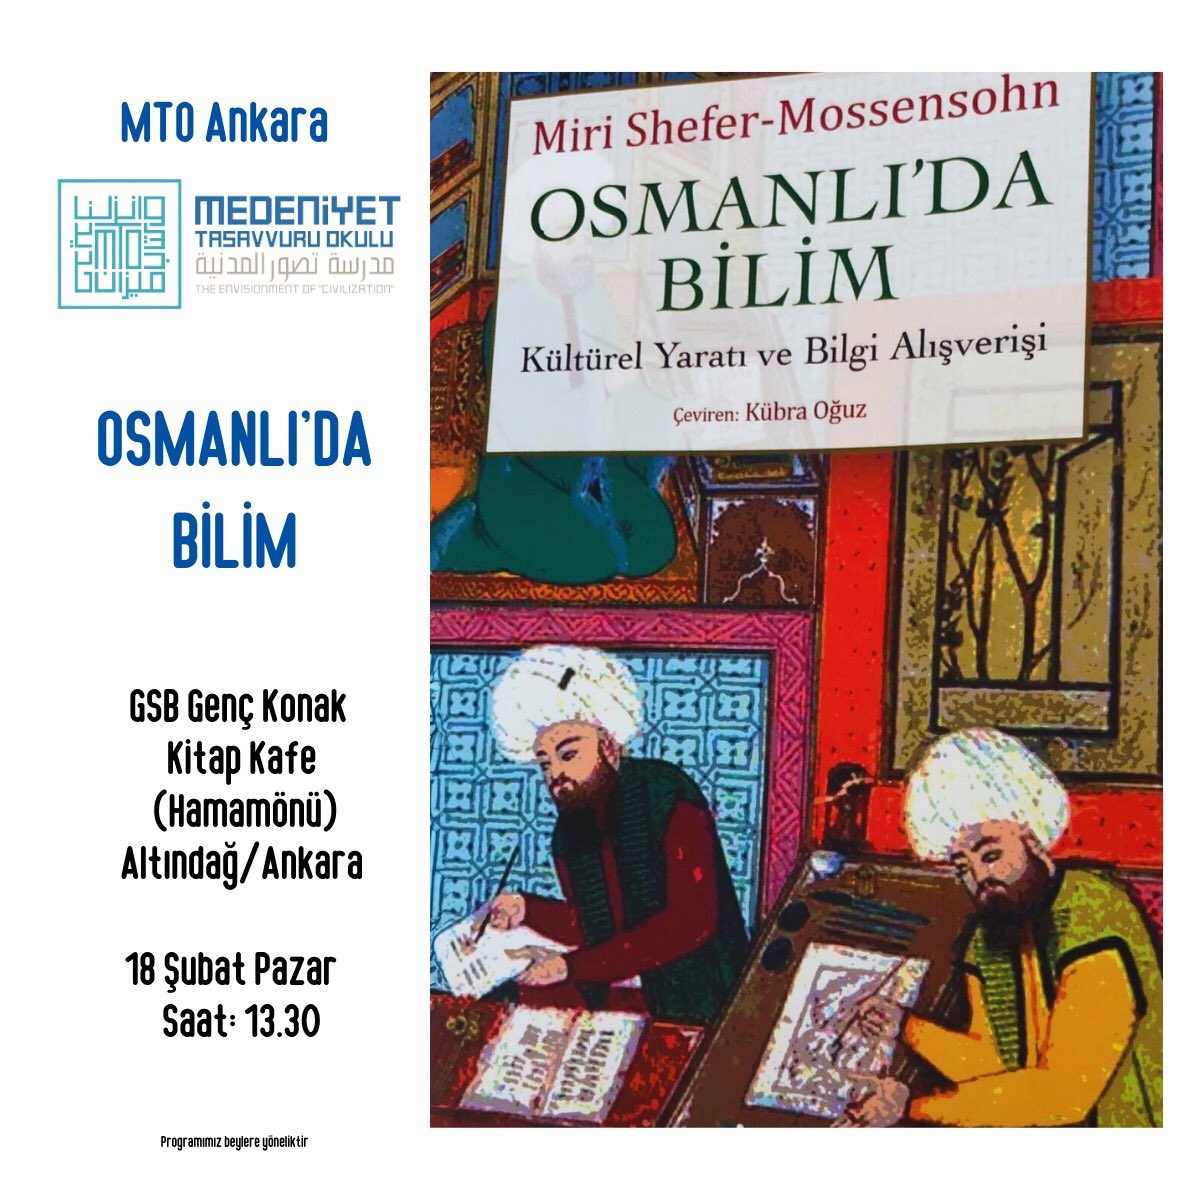 #MTOAnkara’da bu hafta;
Osmanlı’da Bilim’i konuşacağız.

Miri Shefer’in kitabından hareketle Osmanlı bilim tarihine yolculuk yapacağız.

@yenisafakwriter 
#MedeniyetTasavvuruYolculuğu